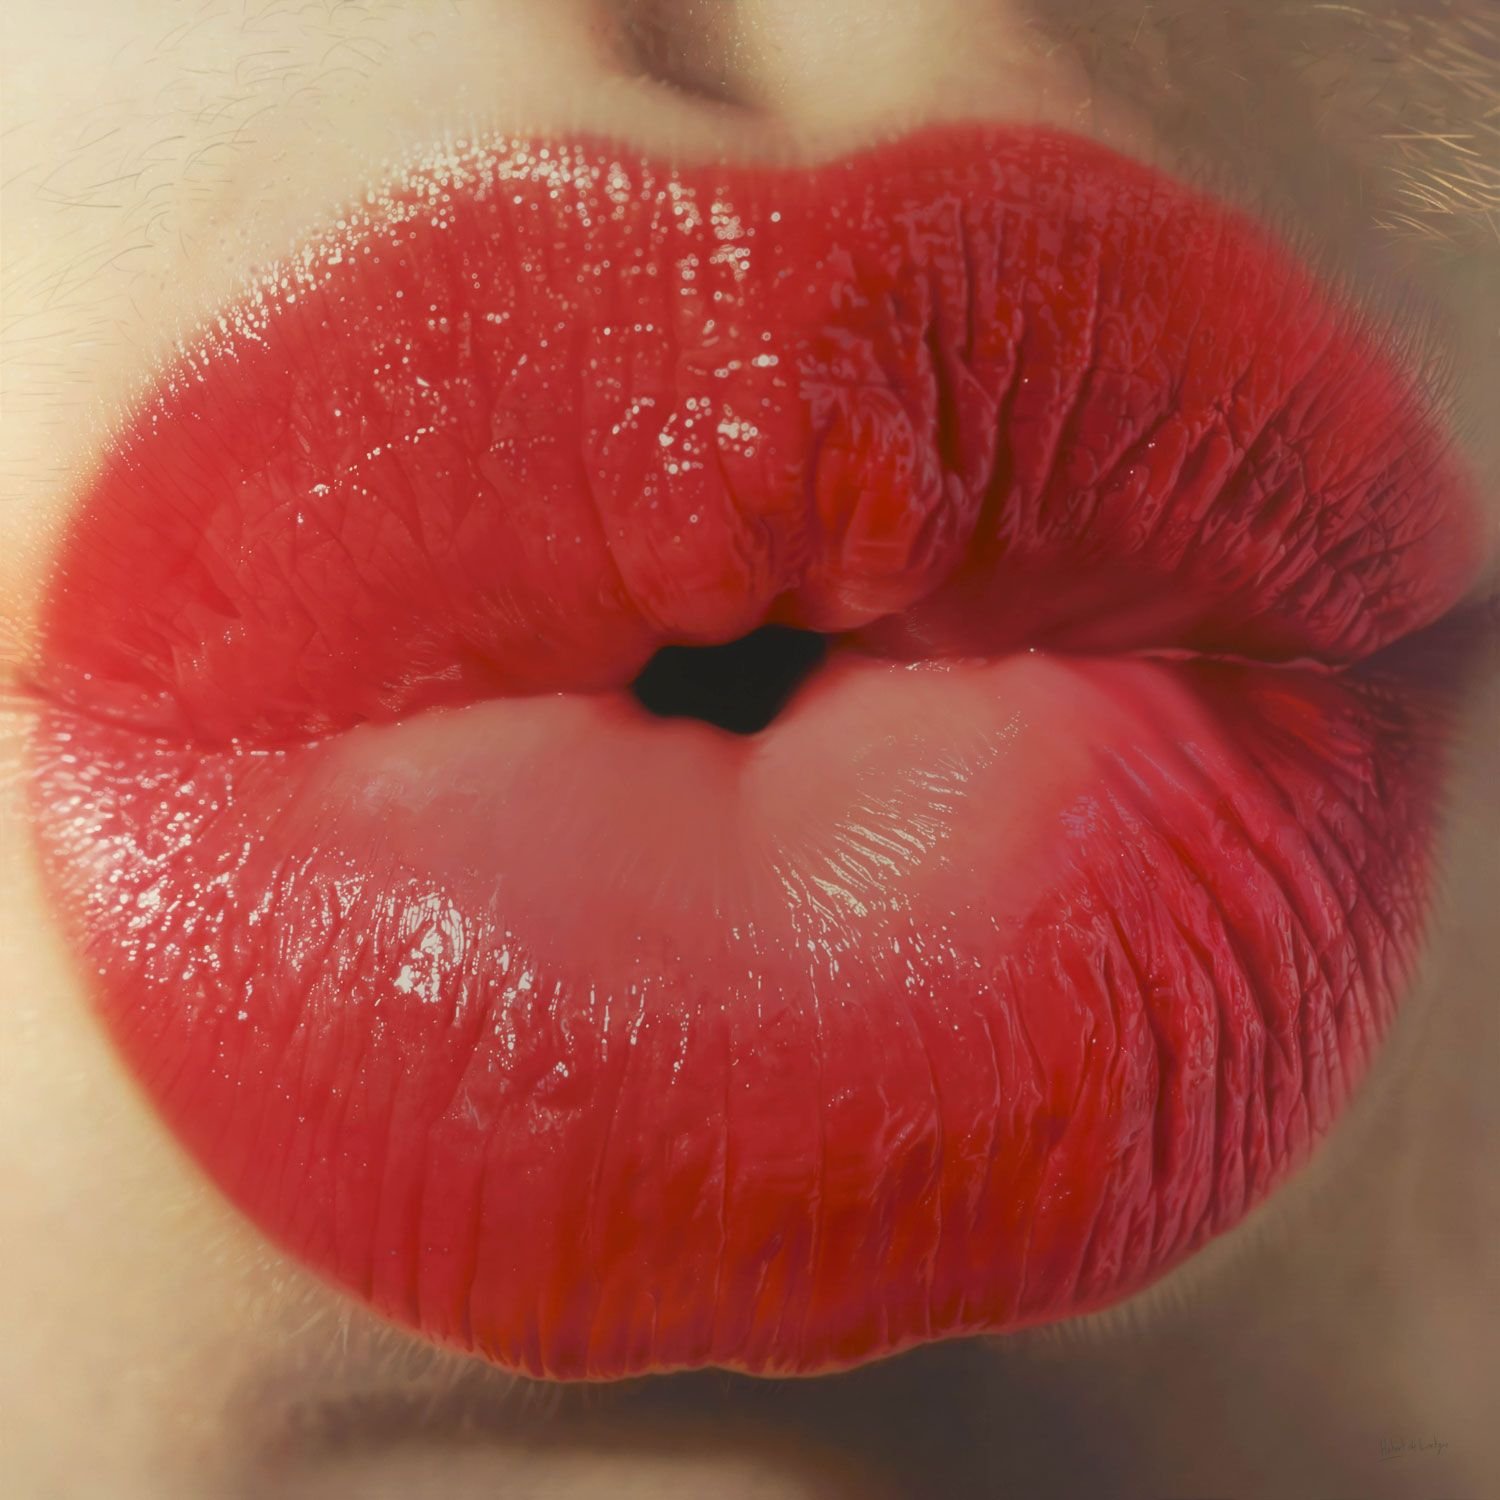 поцелуй фото губы мужские картинки красивые